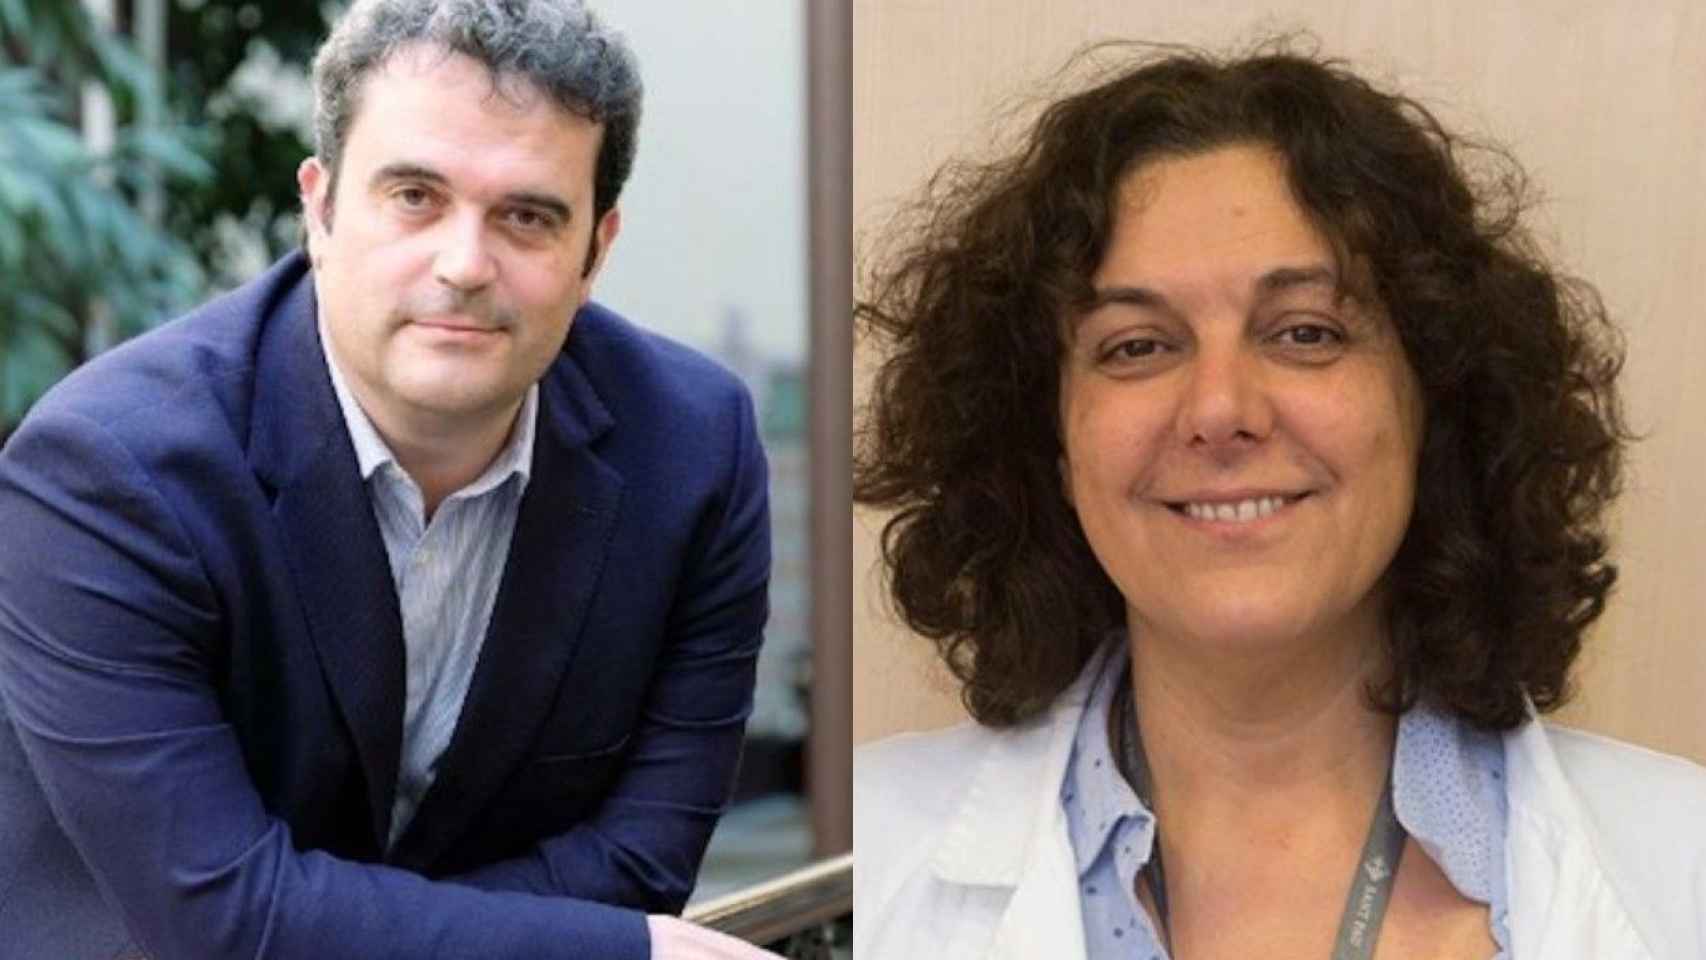 Adrià Comella y Gemma Craywinkel protagonizan un intercambio en la sanidad catalana